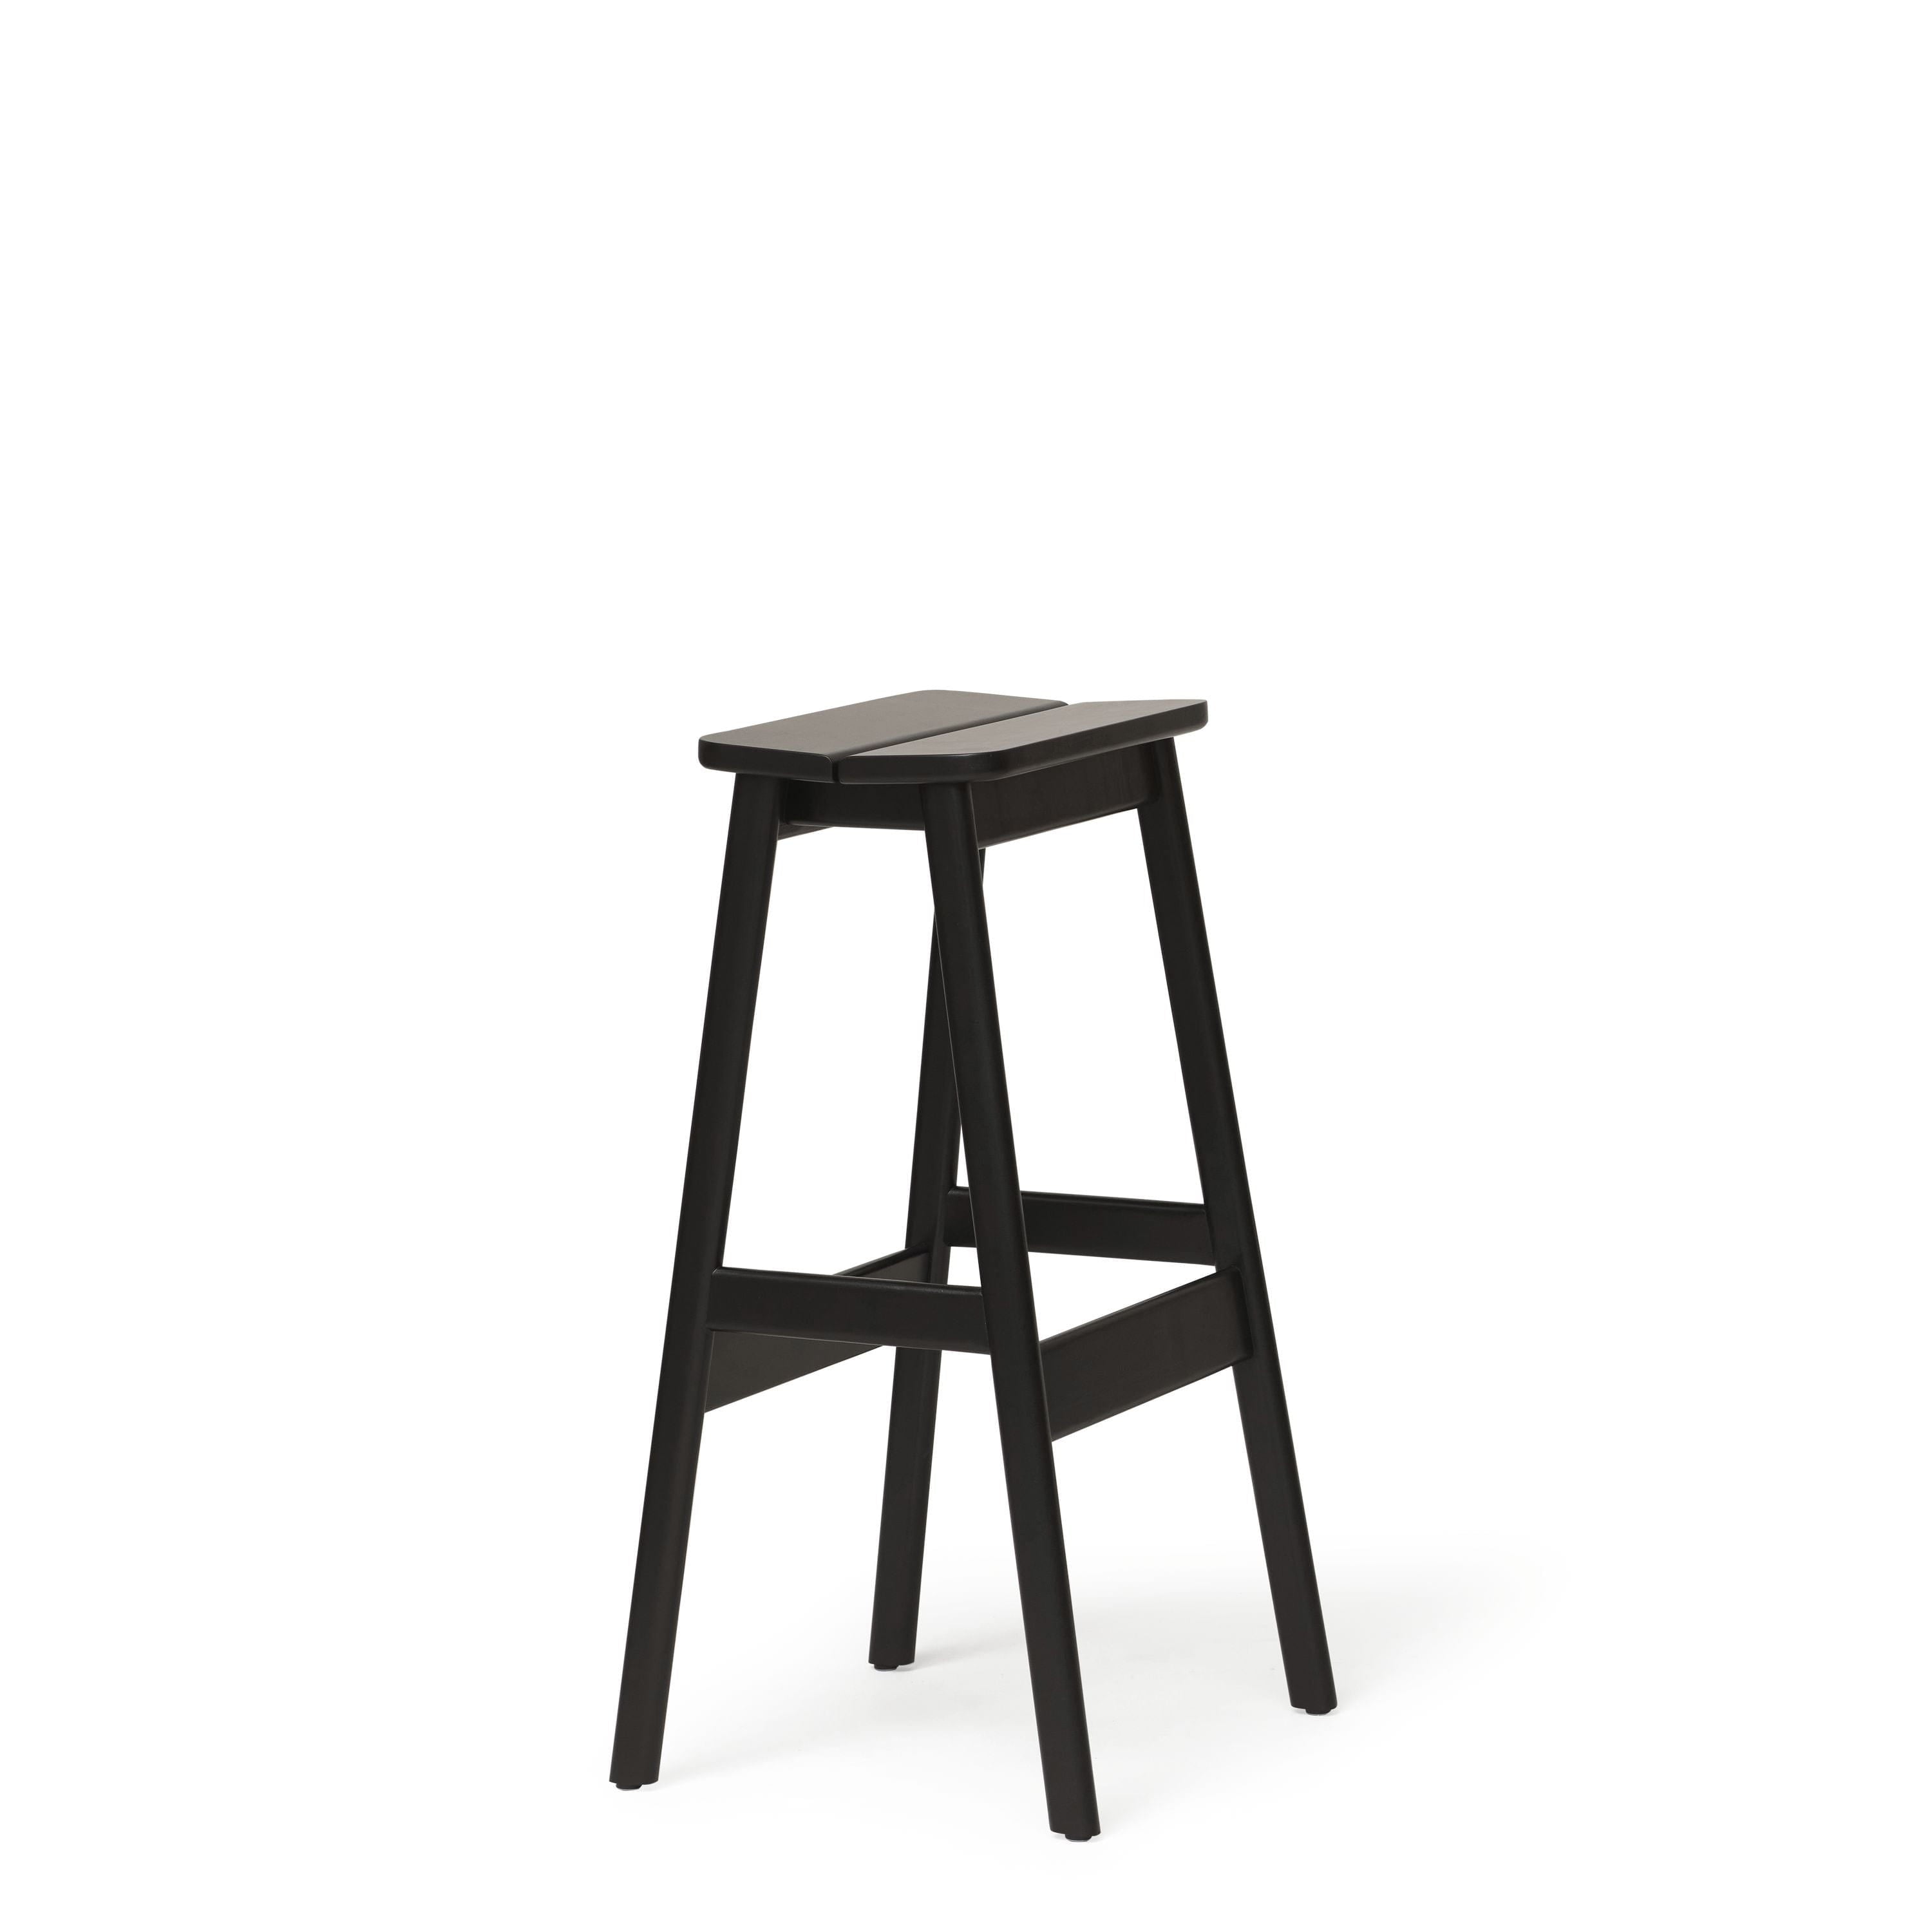 Form & Refine Úhel standardní stolice 75 cm. Černý obarvený buk